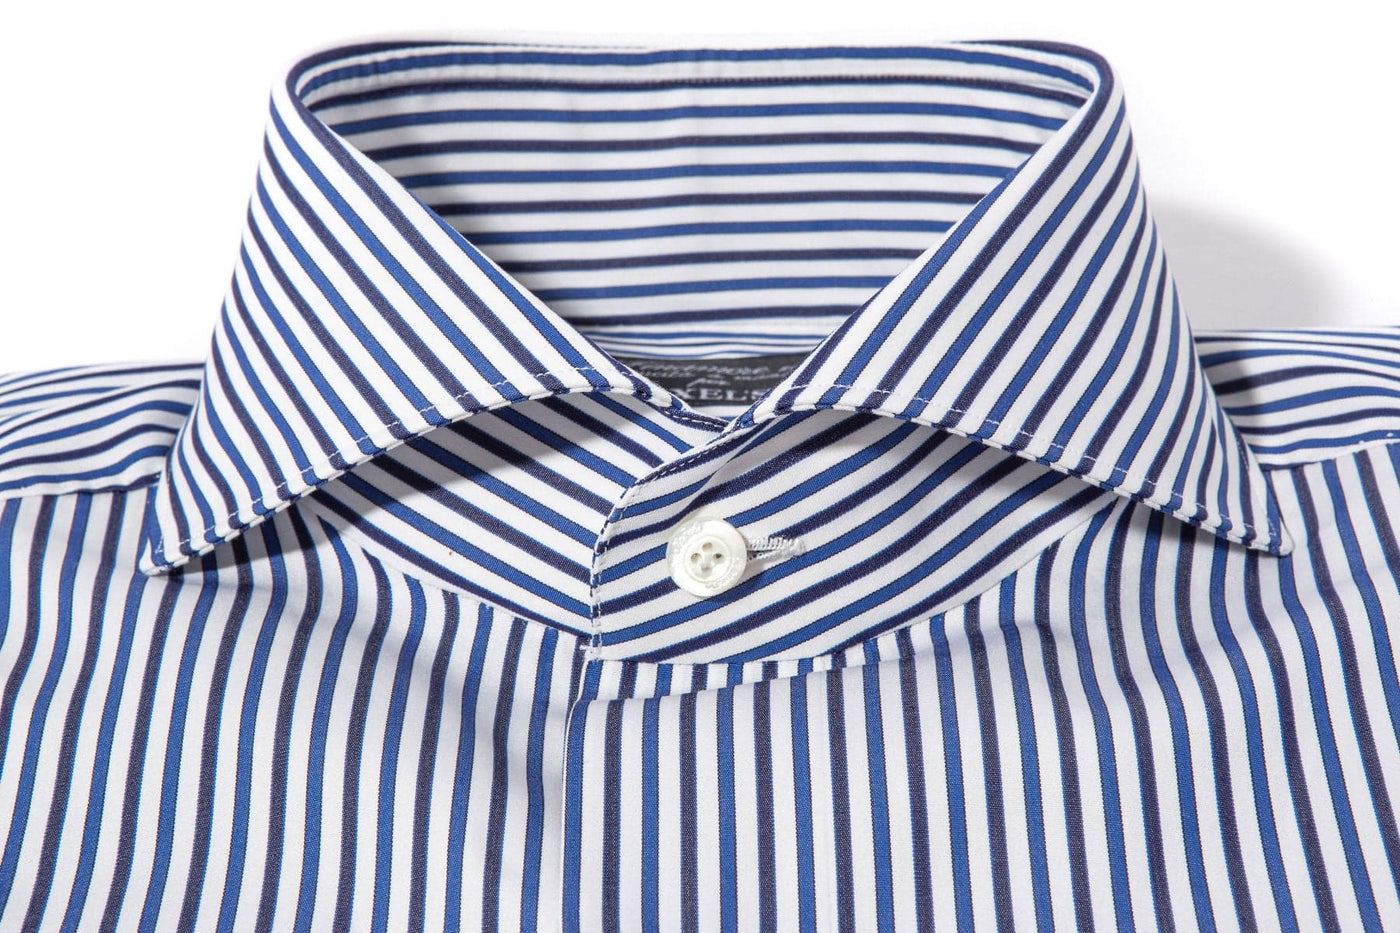 Gerlitzen Stripe Cotton Shirt In Blue Navy White - AXEL'S